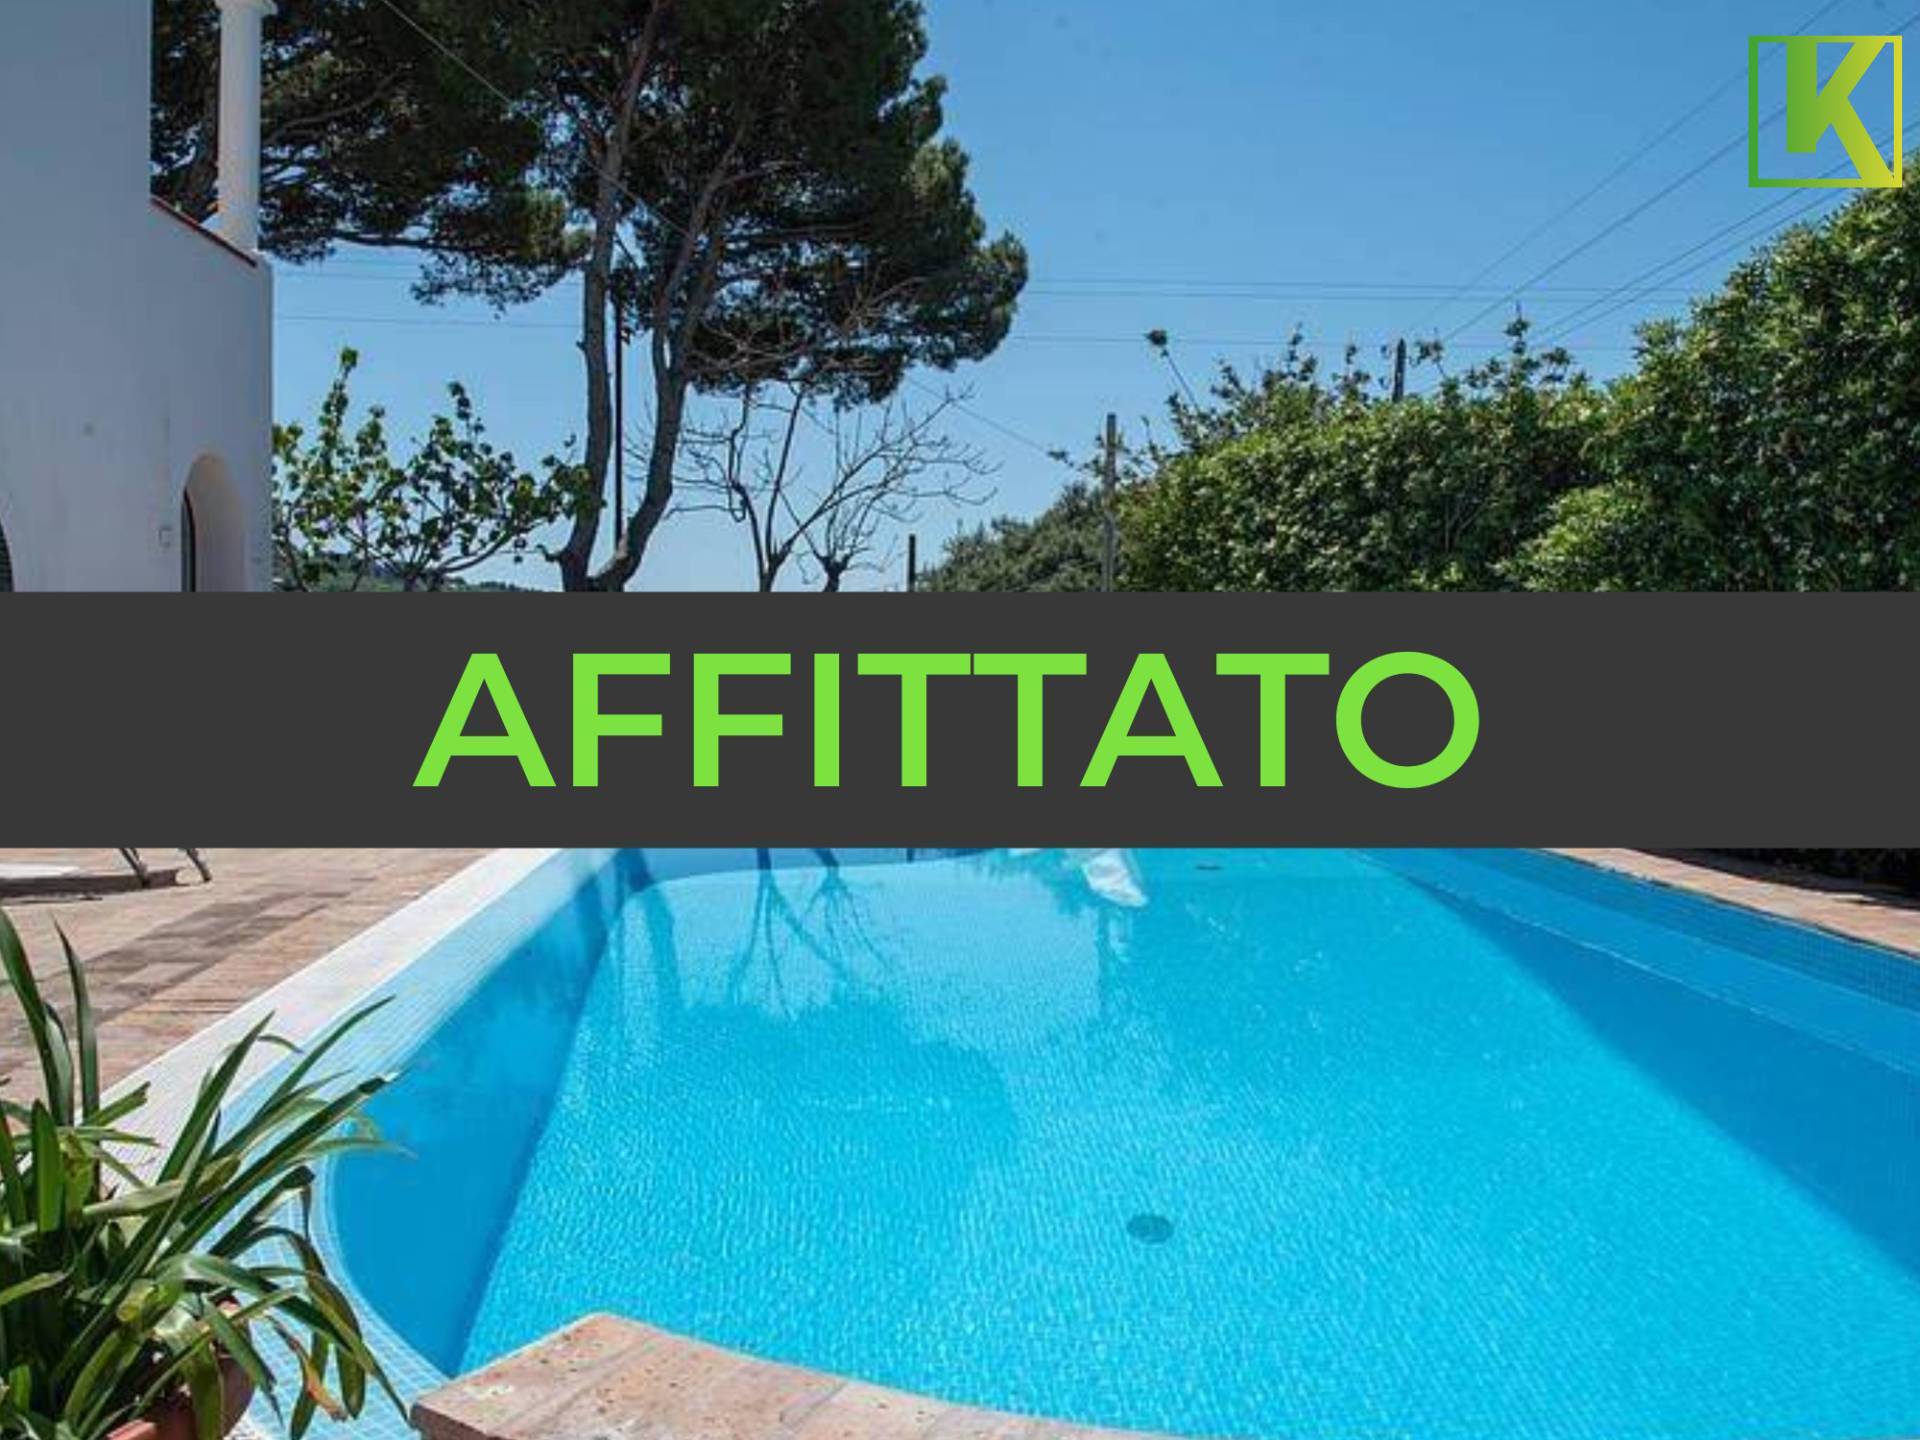 Villa in affitto a Capri, 8 locali, prezzo € 10.000 | PortaleAgenzieImmobiliari.it